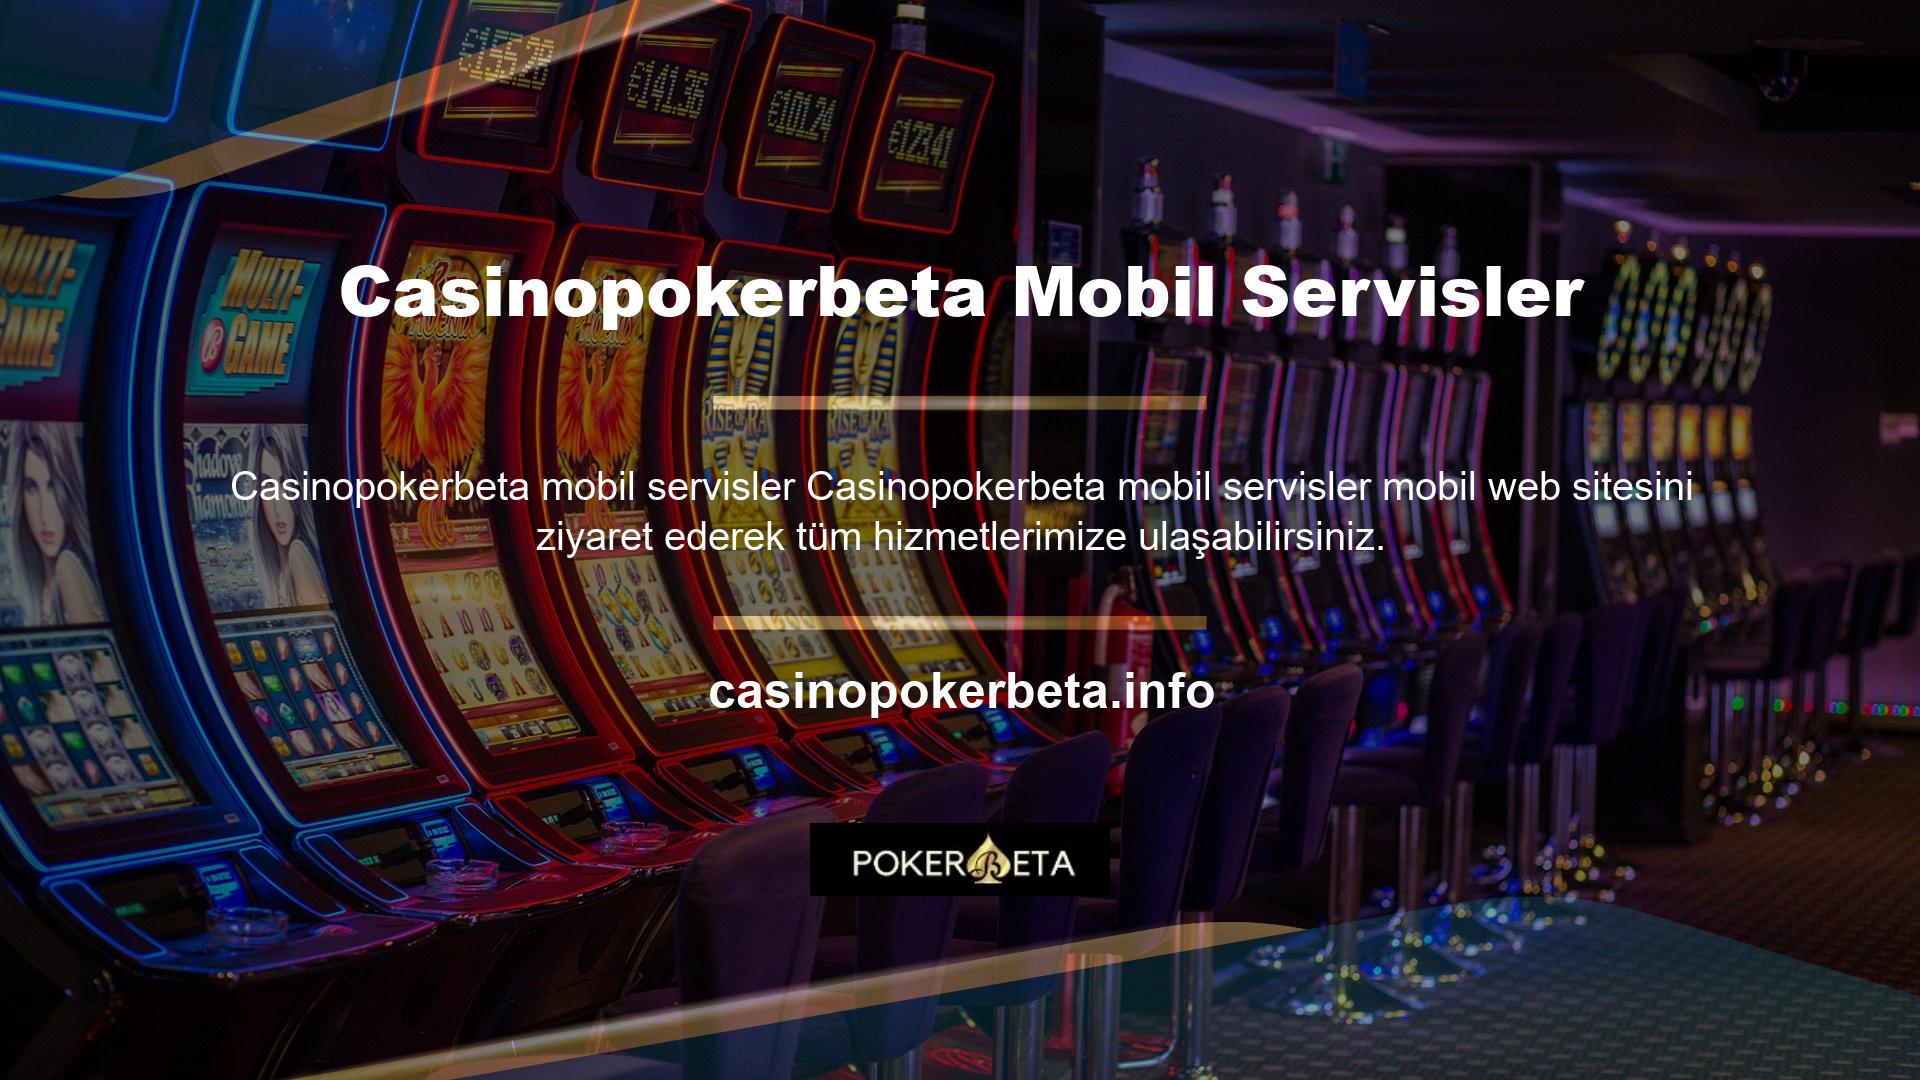 Casinopokerbeta mobil servis bahis sitesi, bilgisayar üzerinden yapılabilecek tüm işlemleri kolaylıkla gerçekleştirmenize olanak sağlar